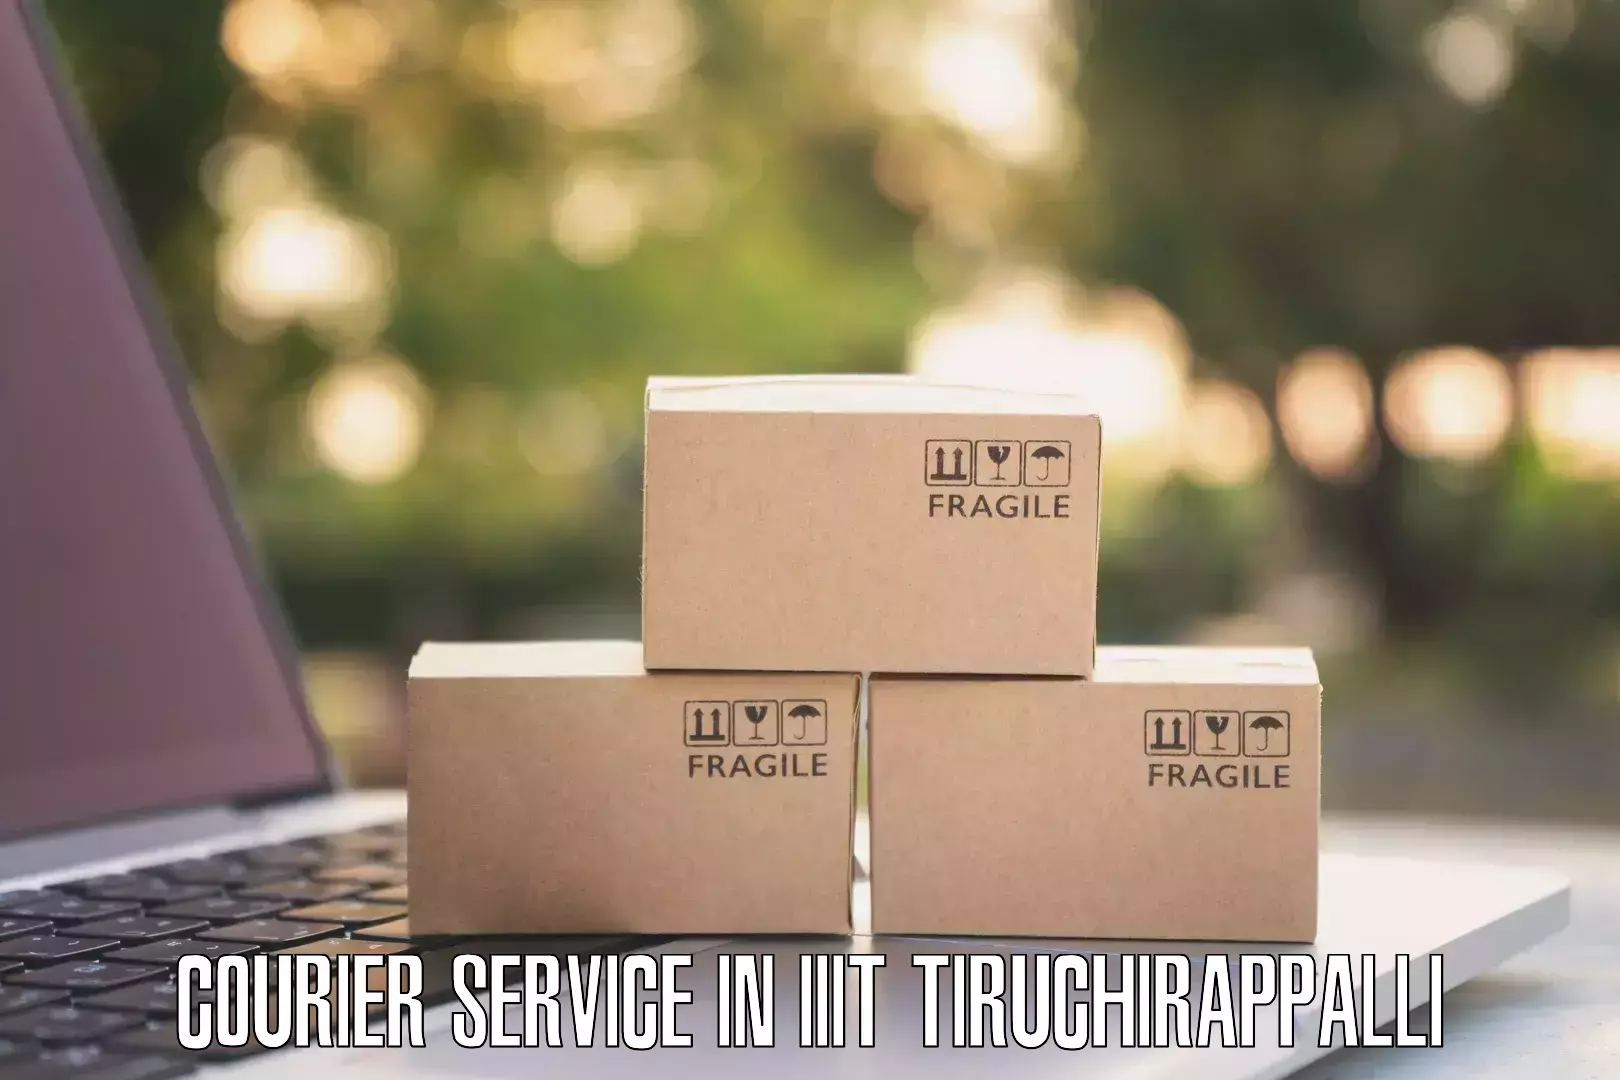 Courier dispatch services in IIIT Tiruchirappalli